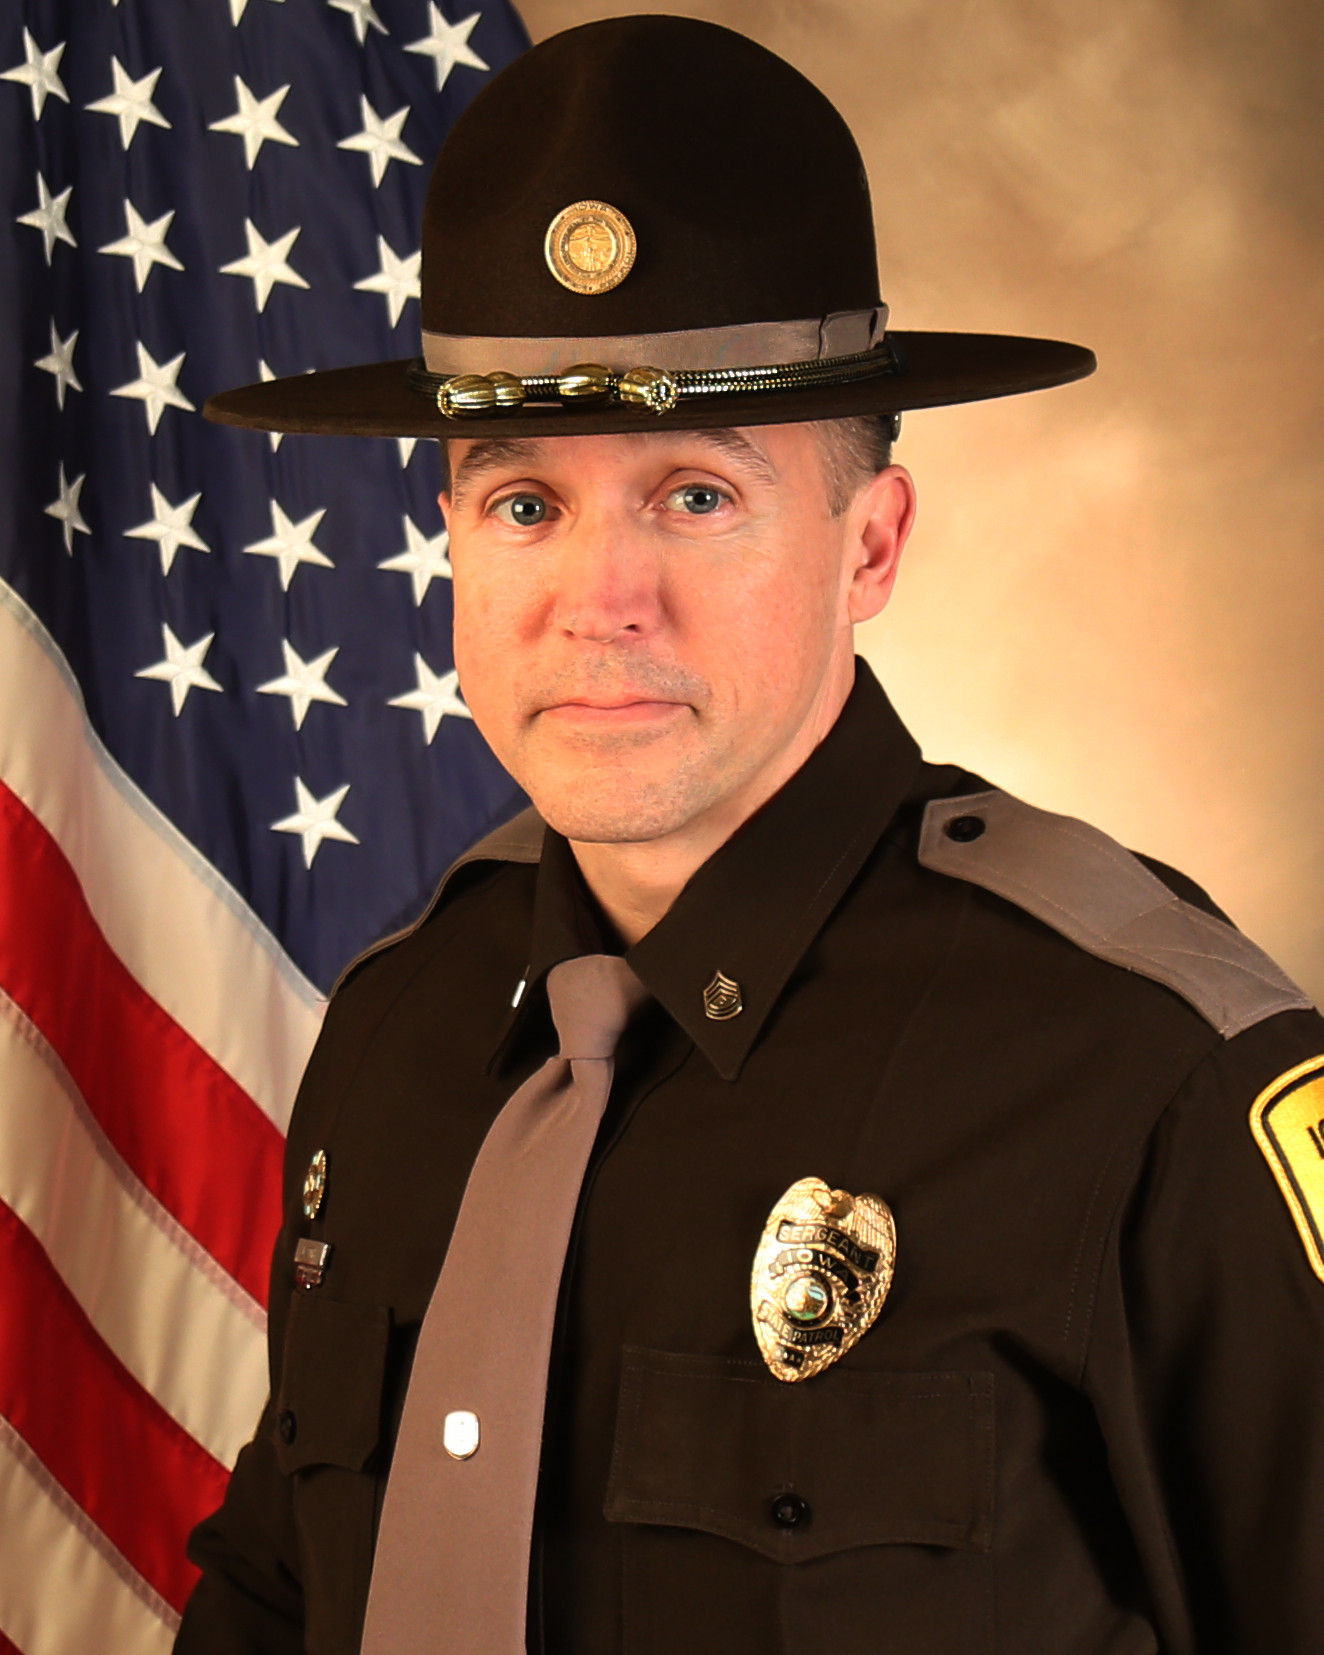 Sergeant James K. Smith | Iowa State Patrol, Iowa